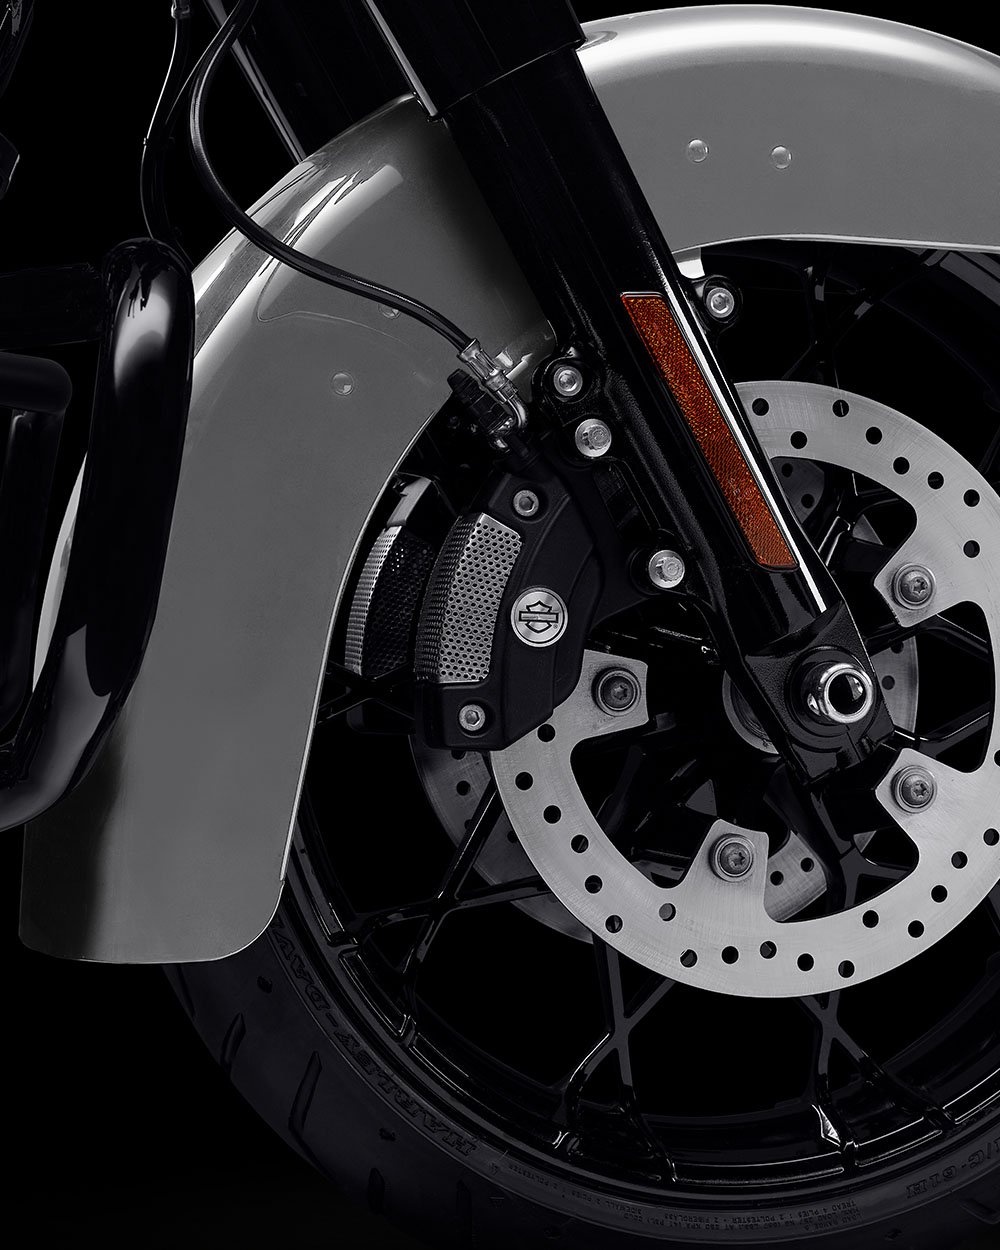 Talon-hjul på en 2022 Sport Glide Special motorcykel